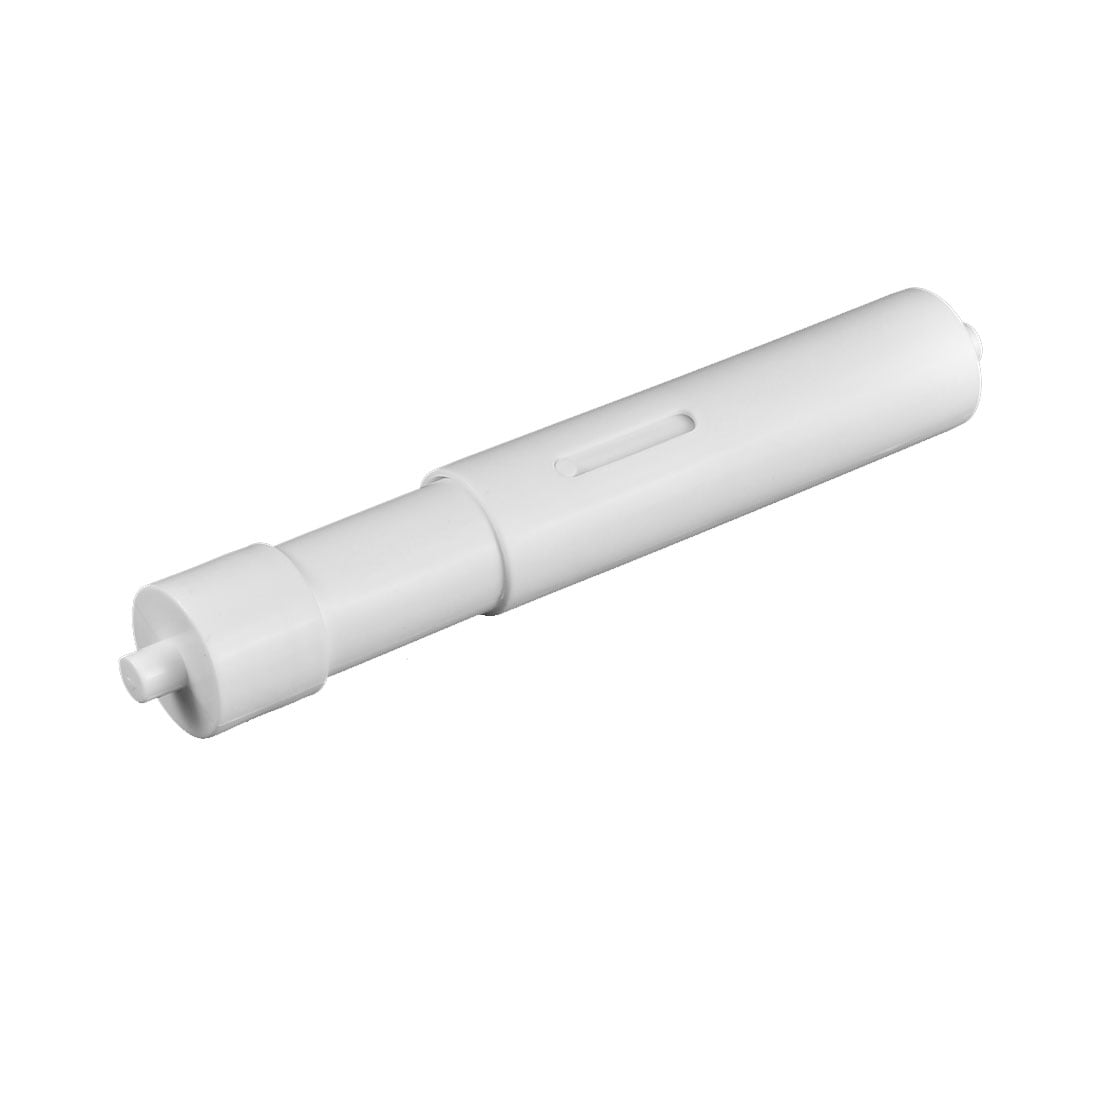 Danco Inc 88648 Toilet Tissue Holder Plastic White Durable Spring Tapered Tips 